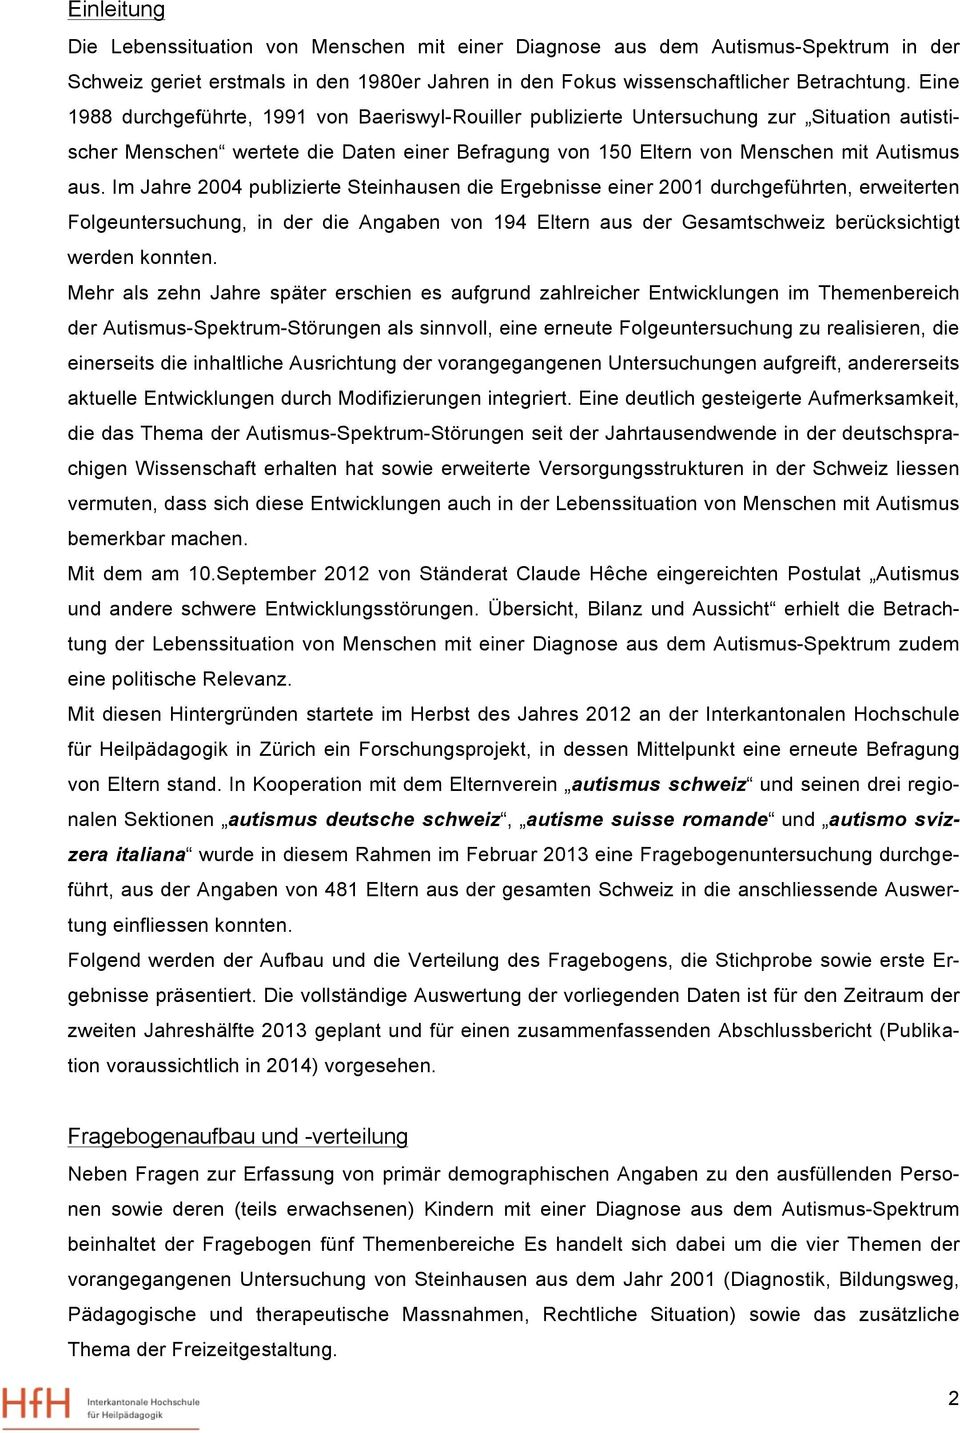 Im Jahre 2004 publizierte Steinhausen die Ergebnisse einer 2001 durchgeführten, erweiterten Folgeuntersuchung, in der die Angaben von 194 Eltern aus der Gesamtschweiz berücksichtigt werden konnten.